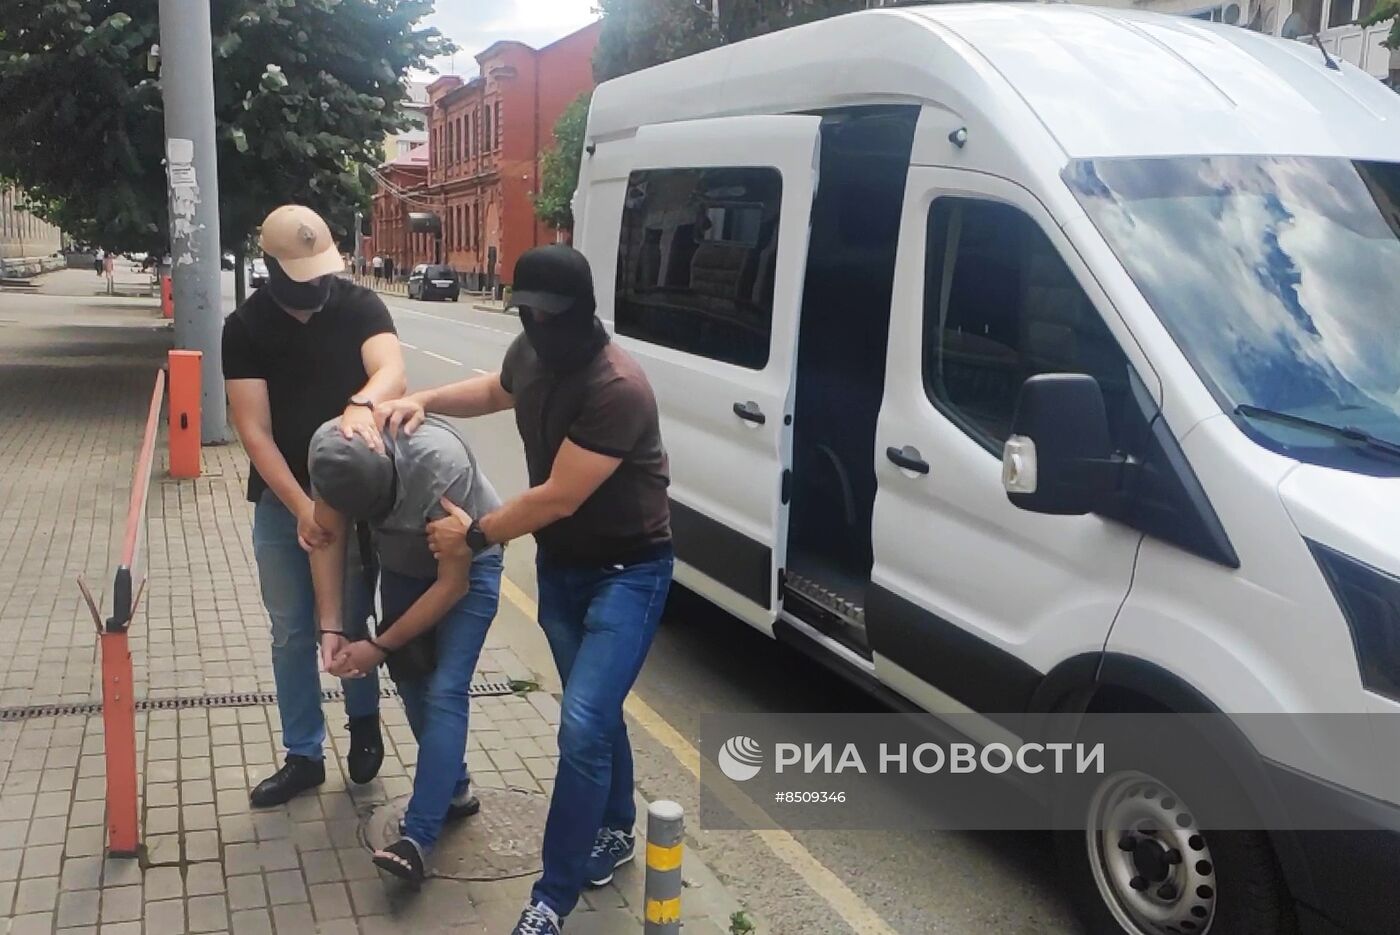 ФСБ РФ задержала жителя Краснодарского края, подозреваемого в госизмене 